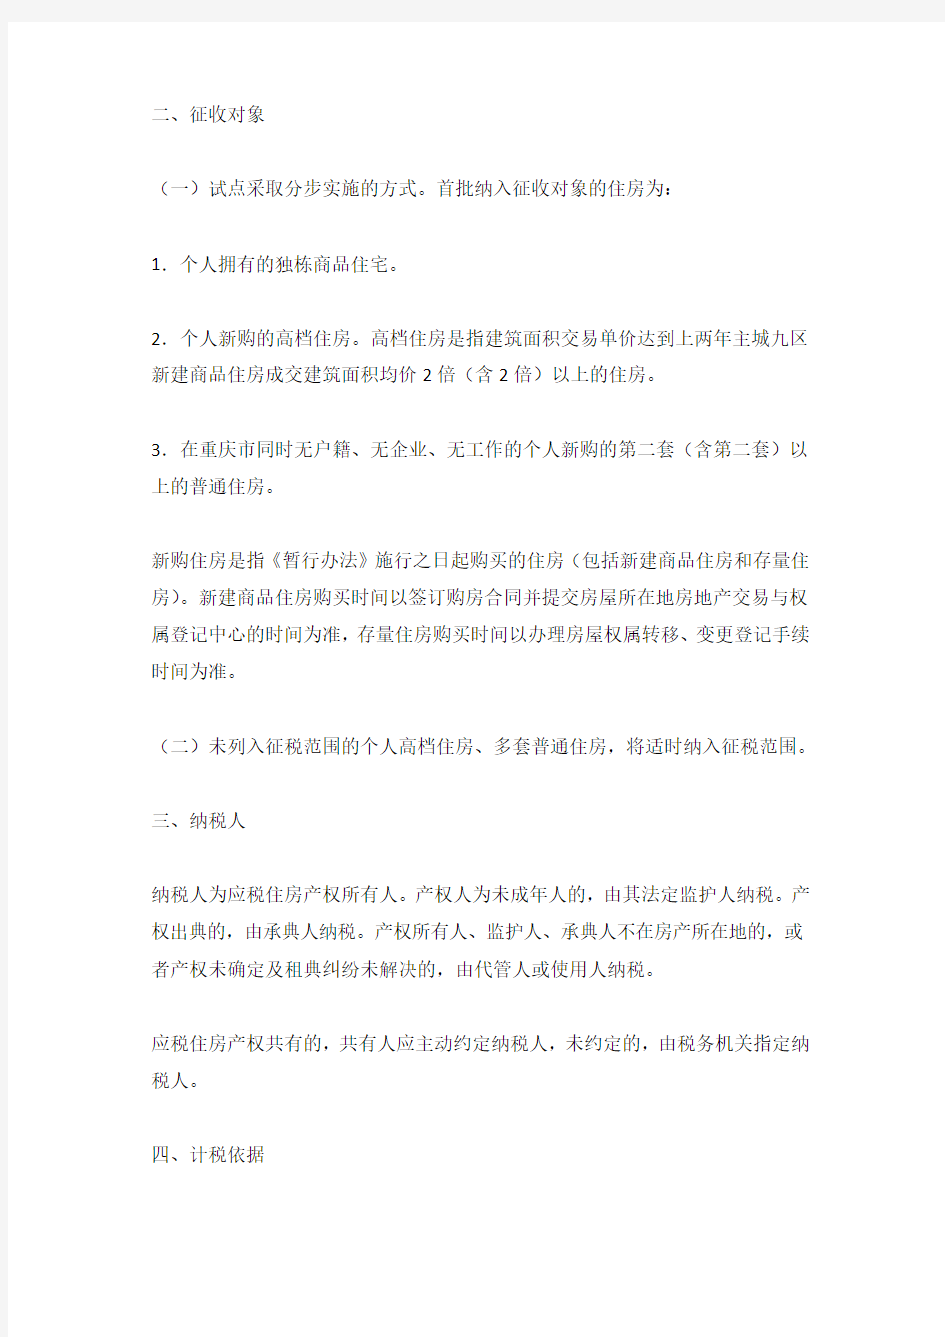 重庆市公布房产税试点暂行办法和实施细则